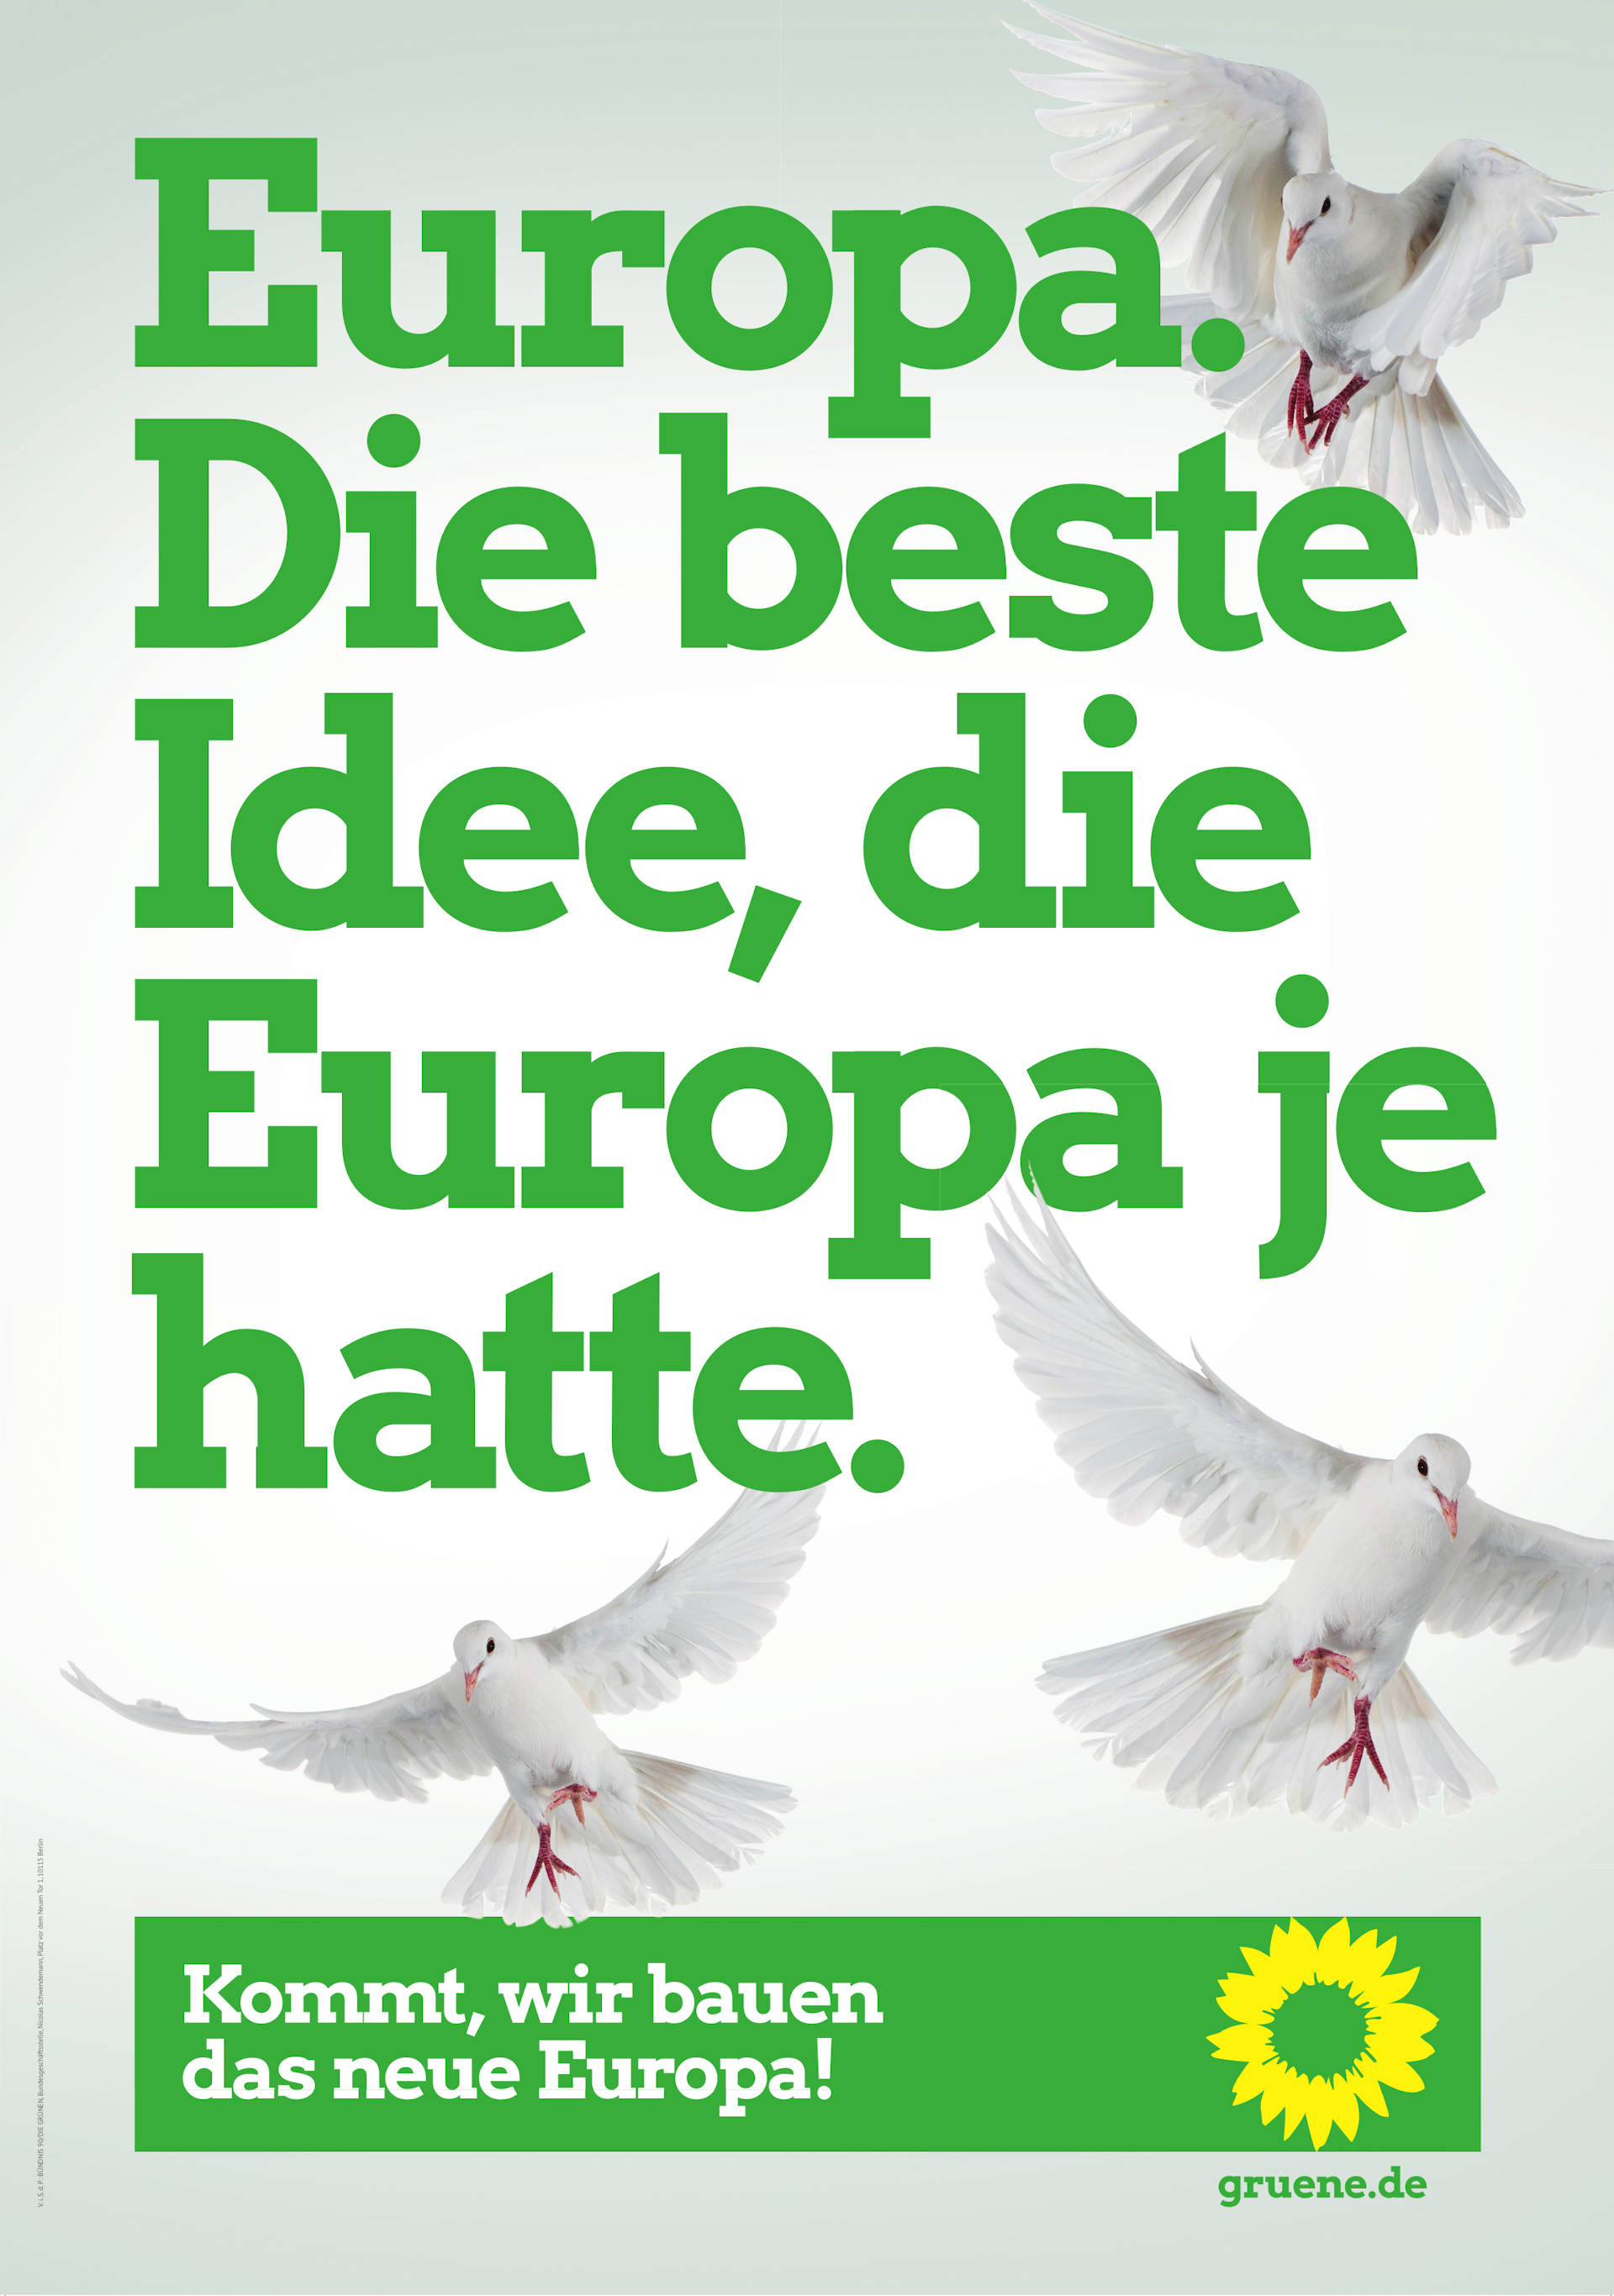 Europawahlplakat 2019, Thema: Europa. Text: "Europa. Die beste Idee, die Europa je hatte.", Slogan: "Kommt, wir bauen das neue Europa!"